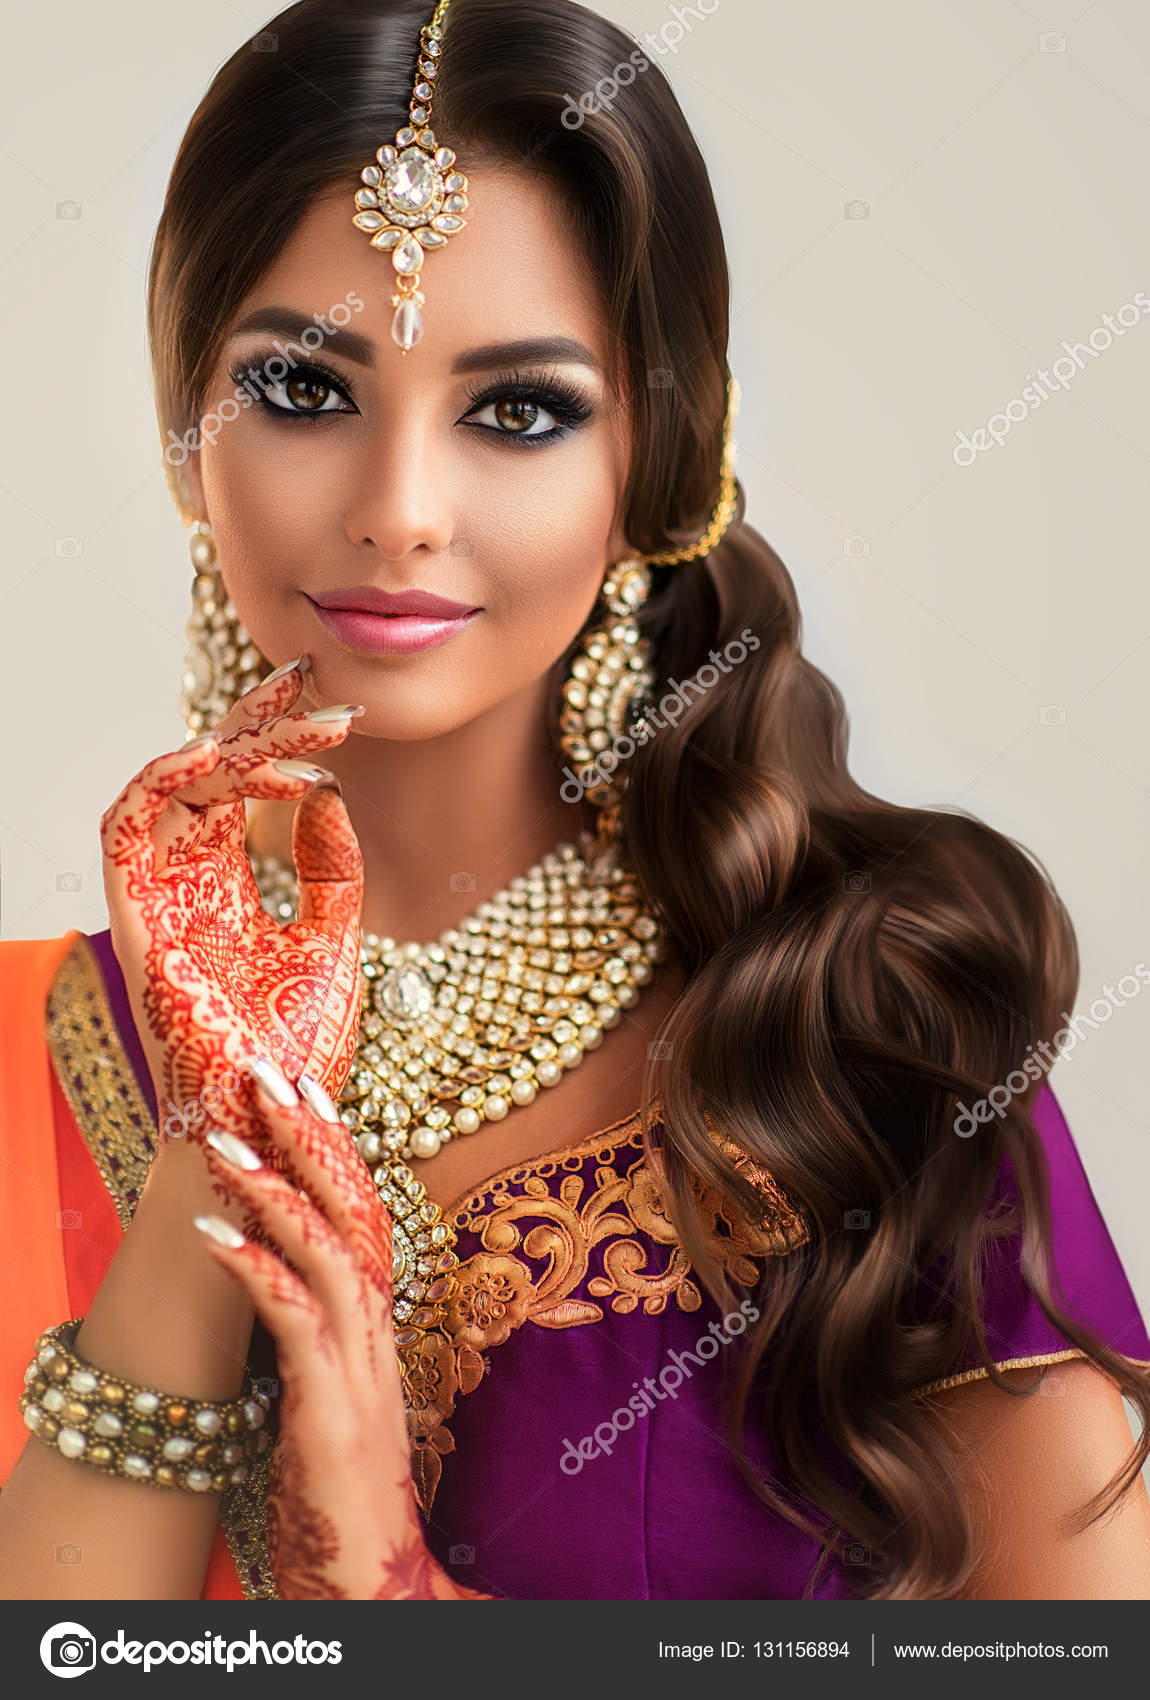 depositphotos_131156894-stock-photo-beautiful-indian-girl.jpg